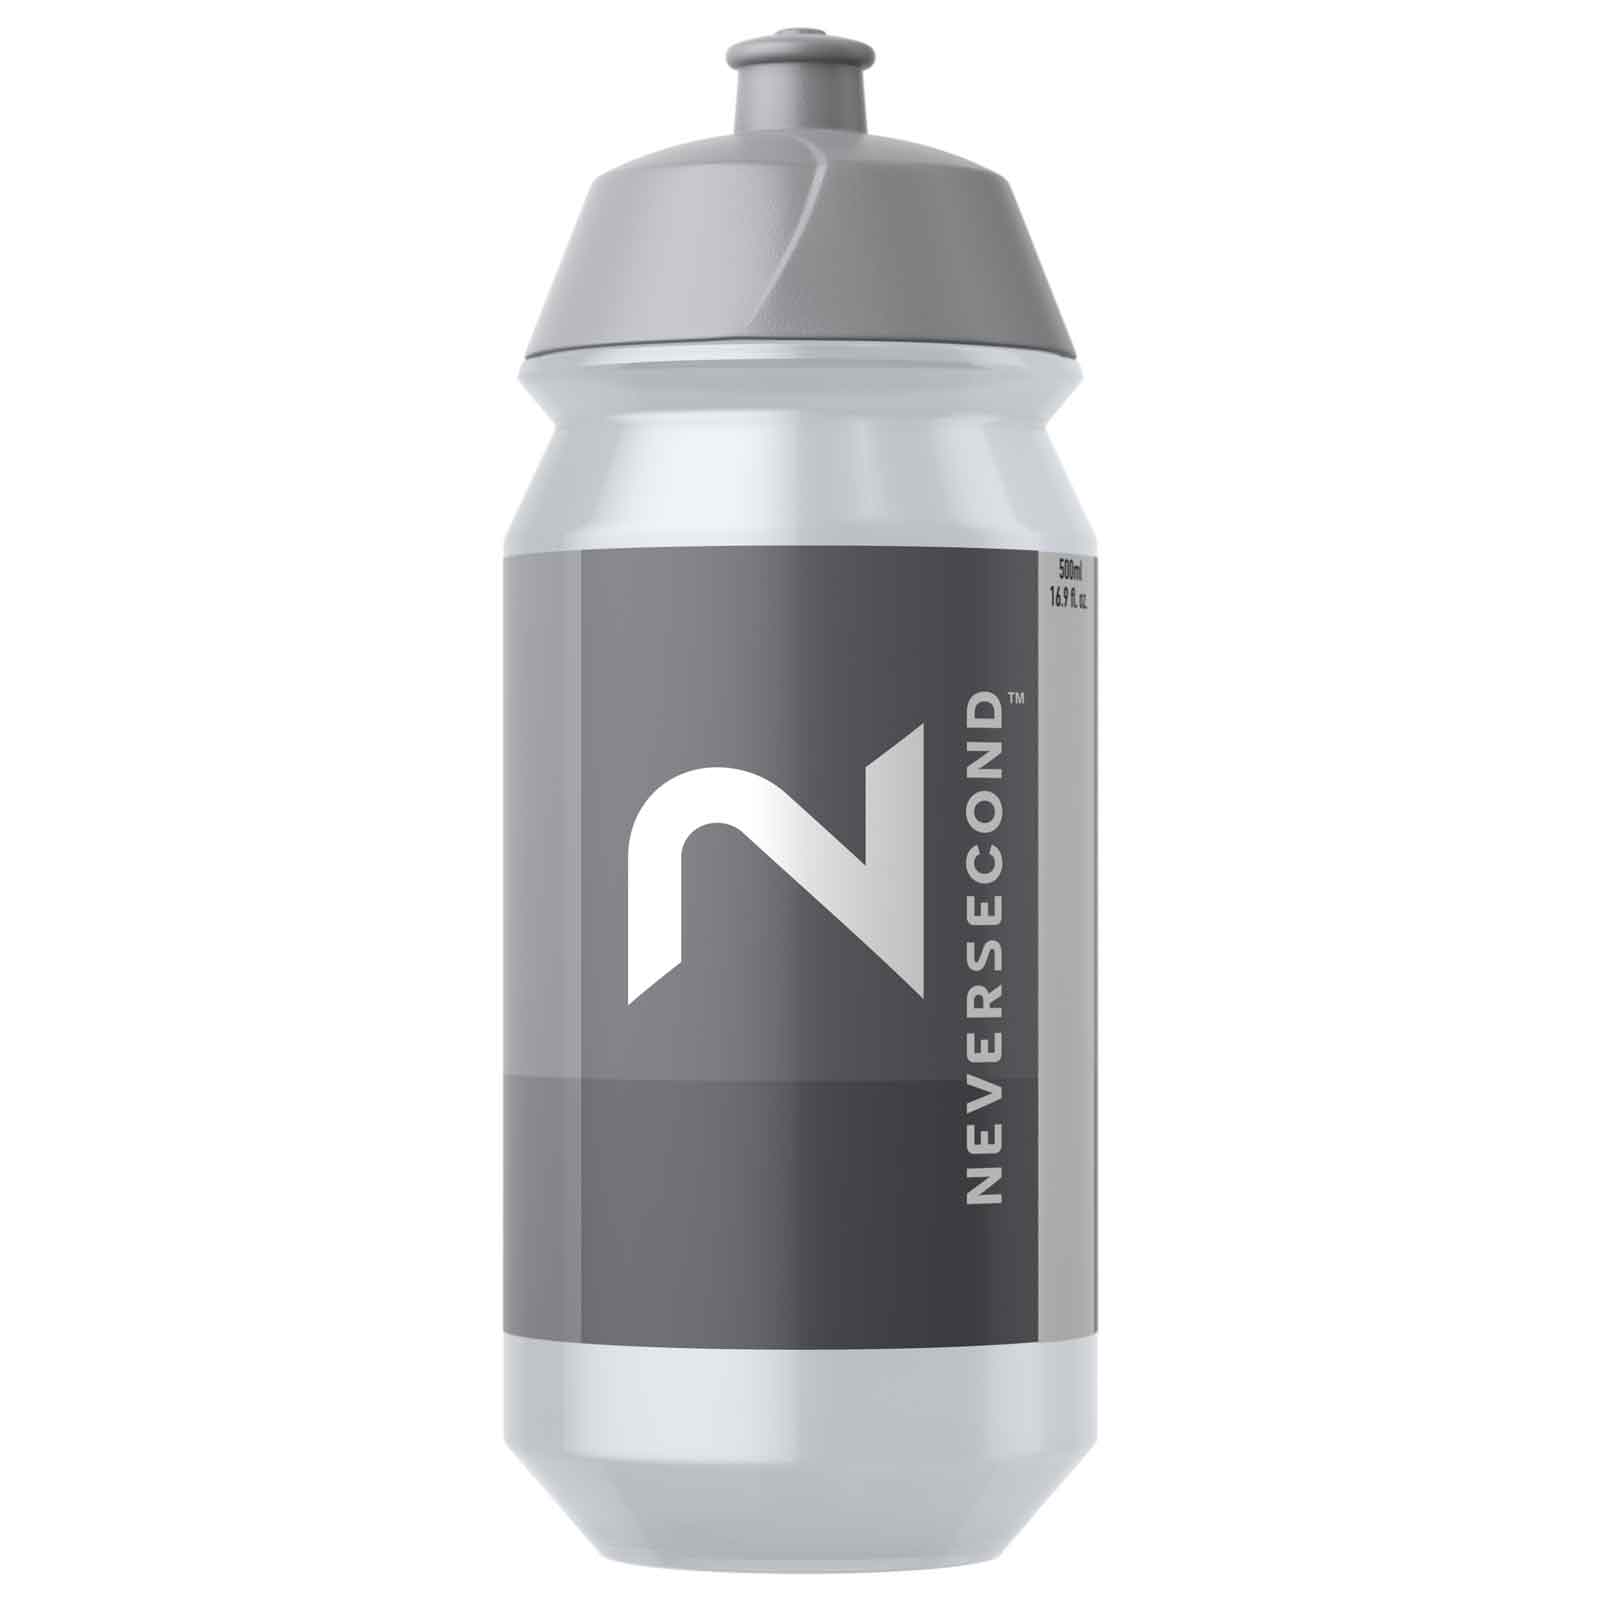 Productfoto van Neversecond Water Bottle 500ml